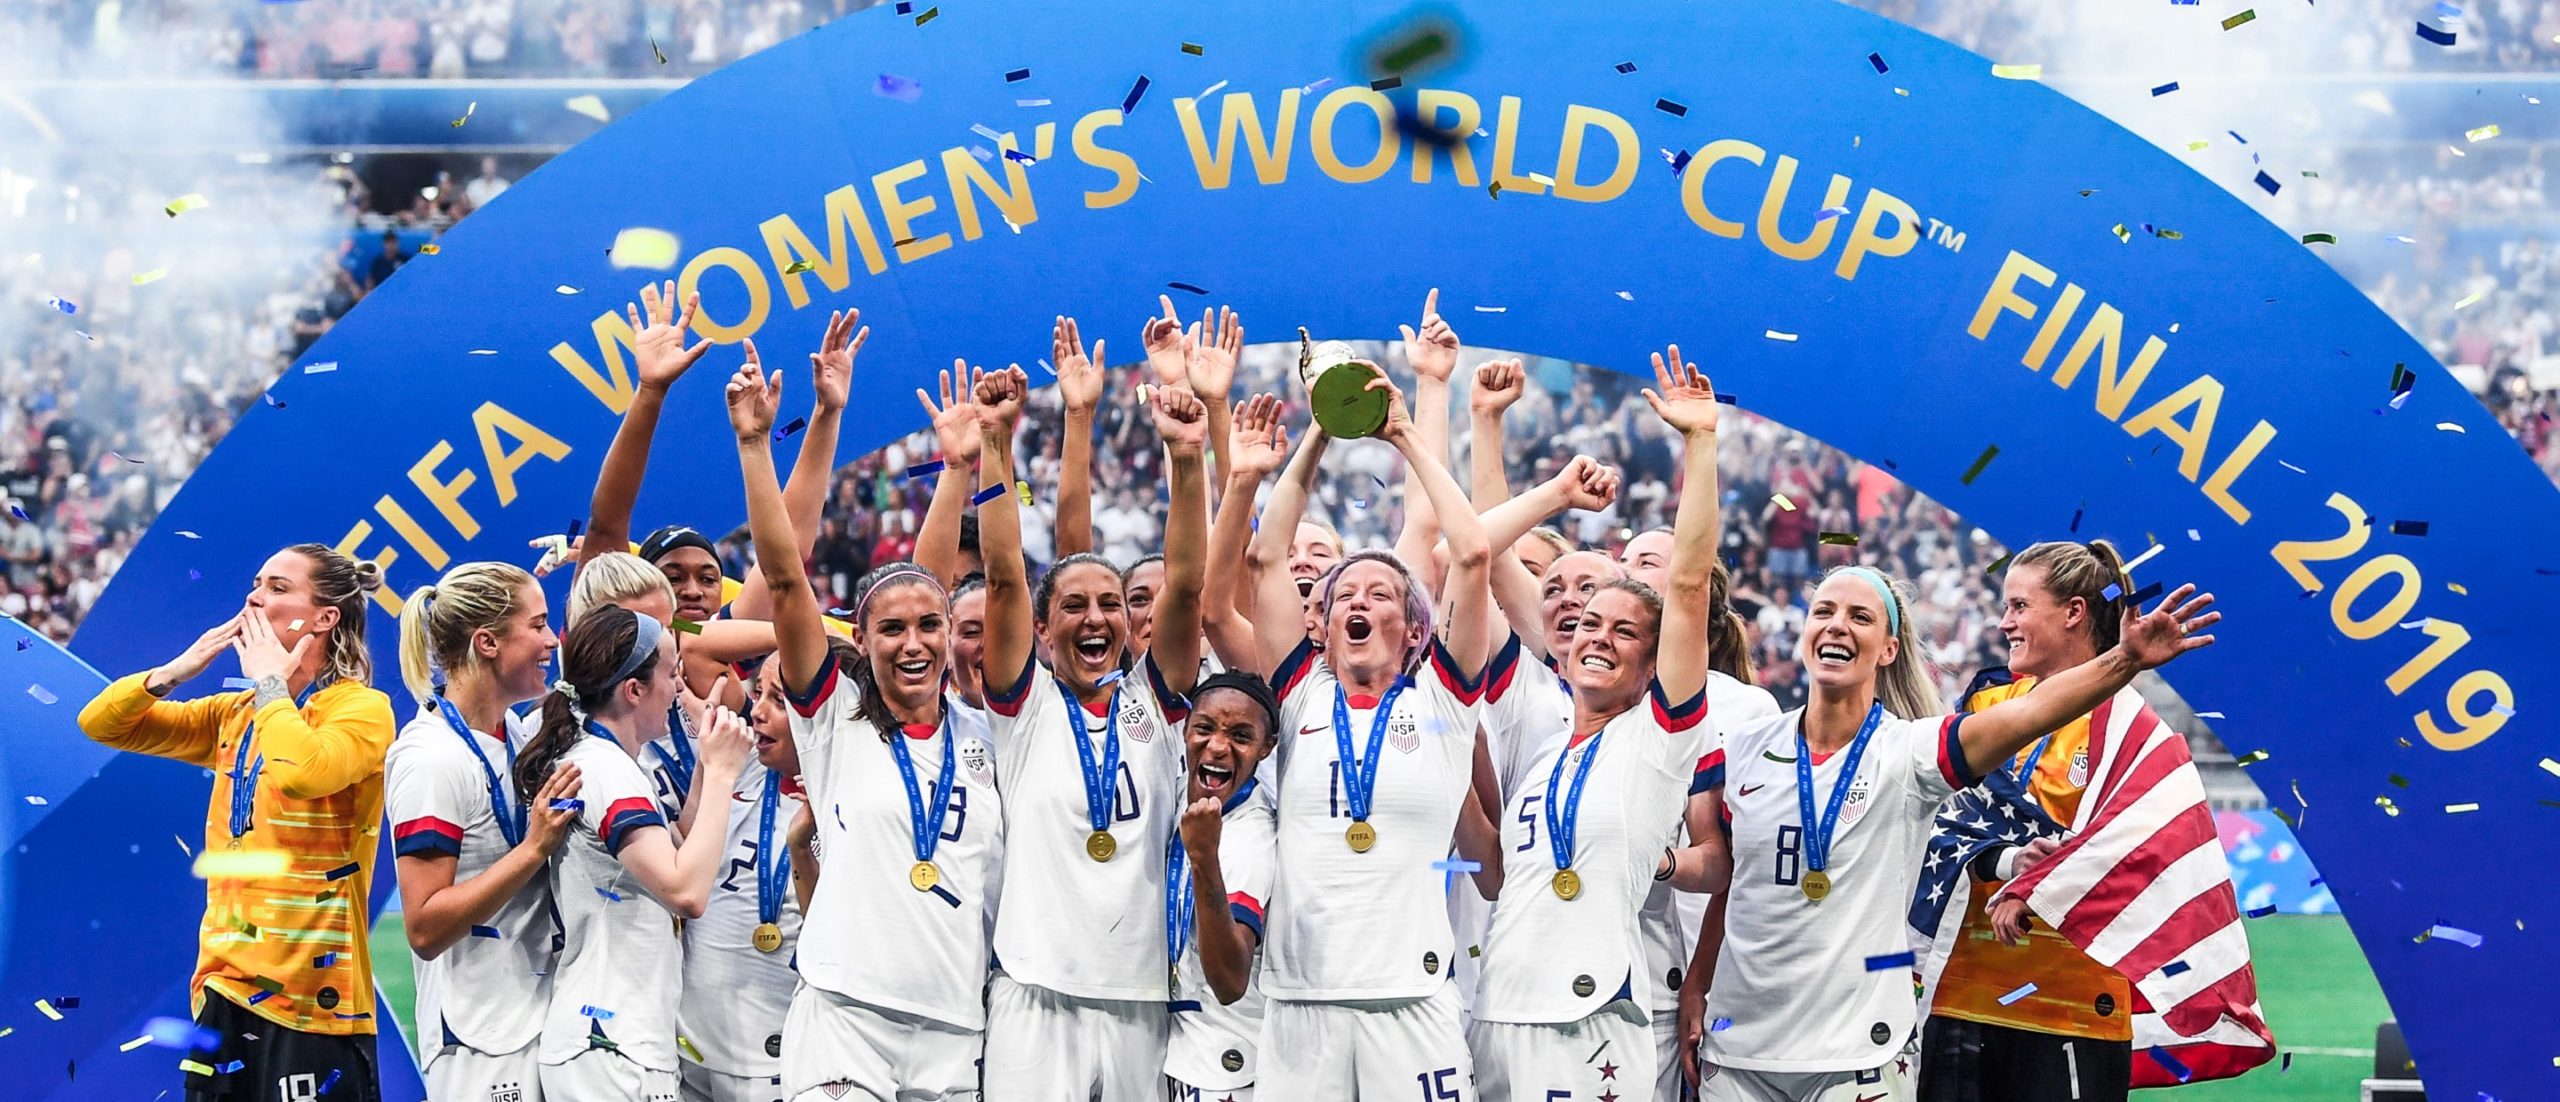 Photo: Courtesy USWNT Website, USWNT Celebration at 2019 World Cup